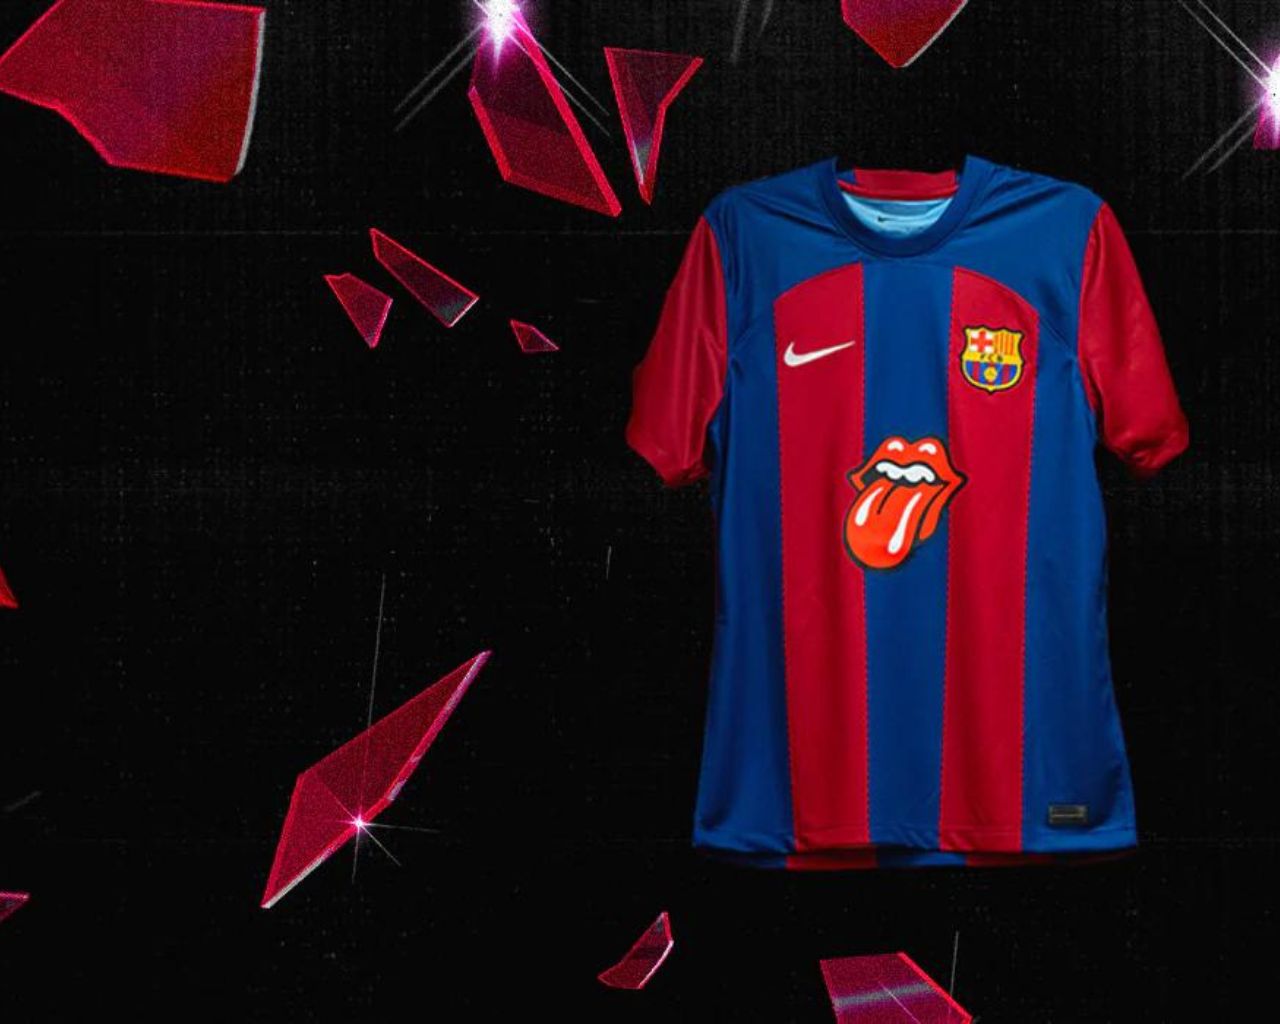 Los 'Rolling Stones' estarán en la camiseta del FC Barcelona